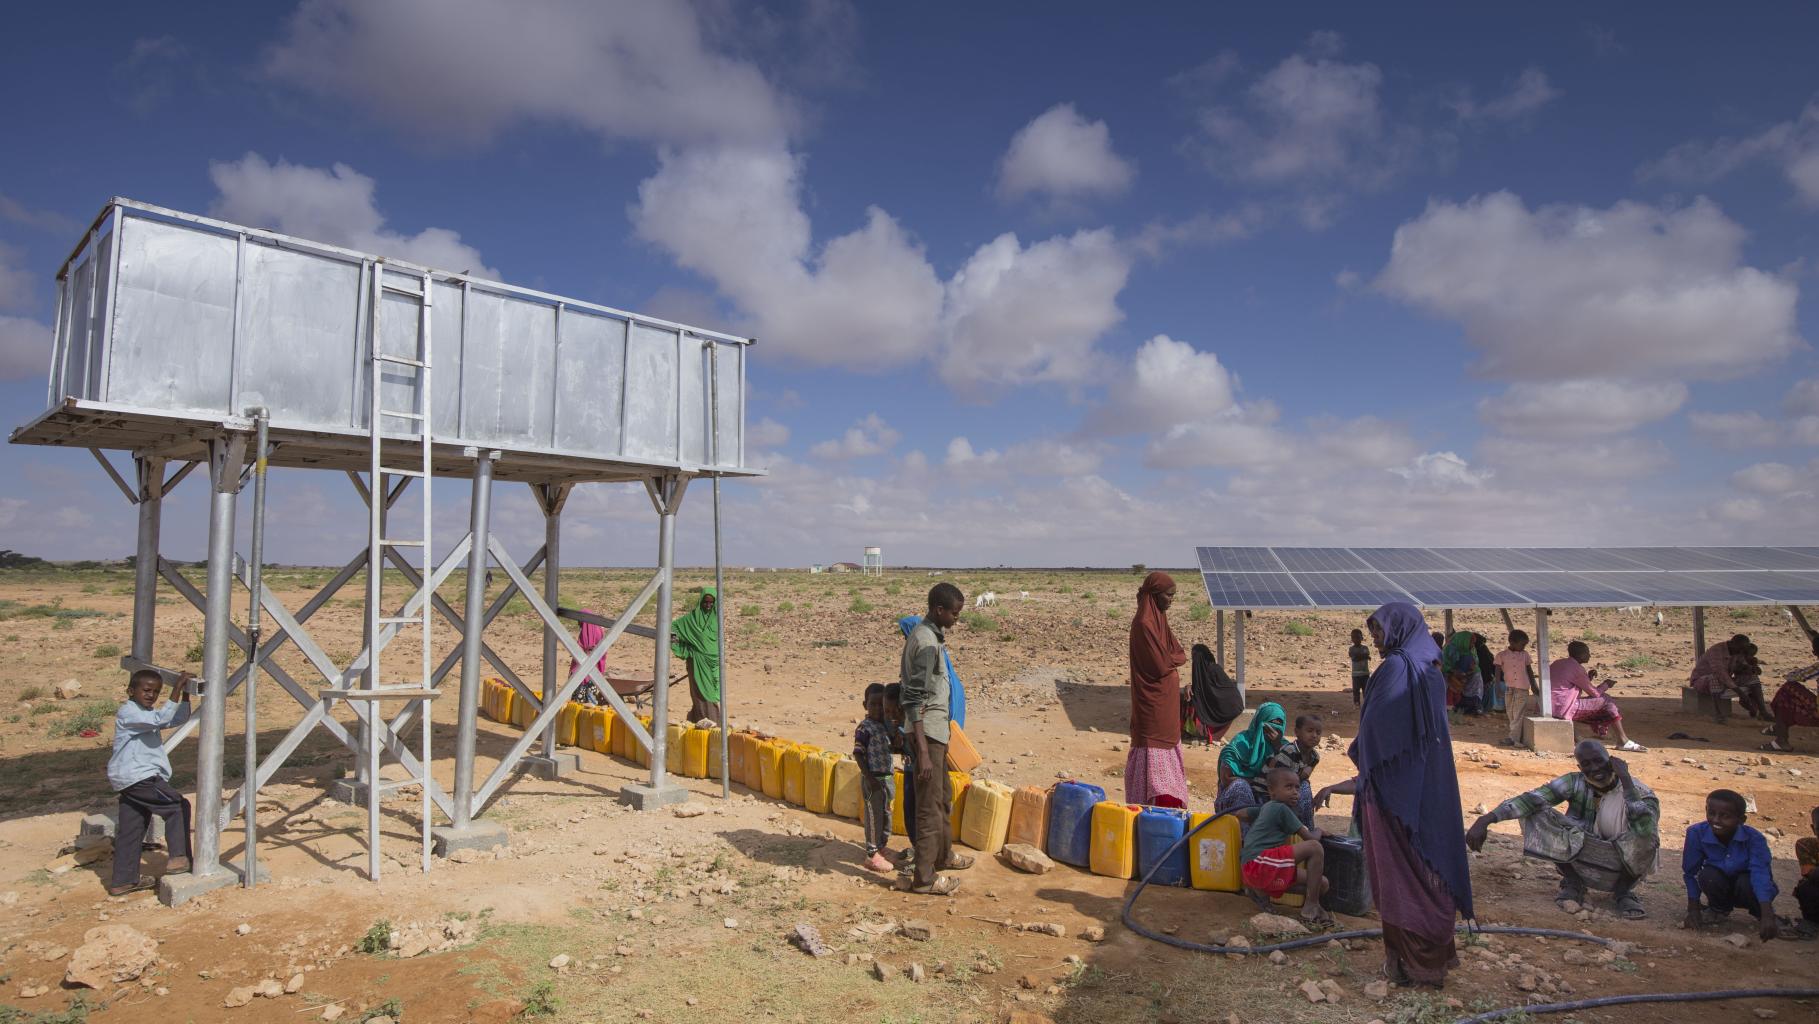 In der von Oxfam gebauten Entsalzungsanlage in Ceel Midgaan, Somaliland, wird sauberes Wasser erzeugt.Das Bild zeigt einen Wassertank, vor dem viele Wasserkanister stehen. Im Hintergrund steht eine Solaranlage, die die Entsalzungsanlage mit Strom versorgt. Unter den Solarpanels sitzen einige Menschen im Schatten. Weitere Menschen stehen und Hocken in der Sonne und warten darauf, ihre Kanister befüllen zu können.